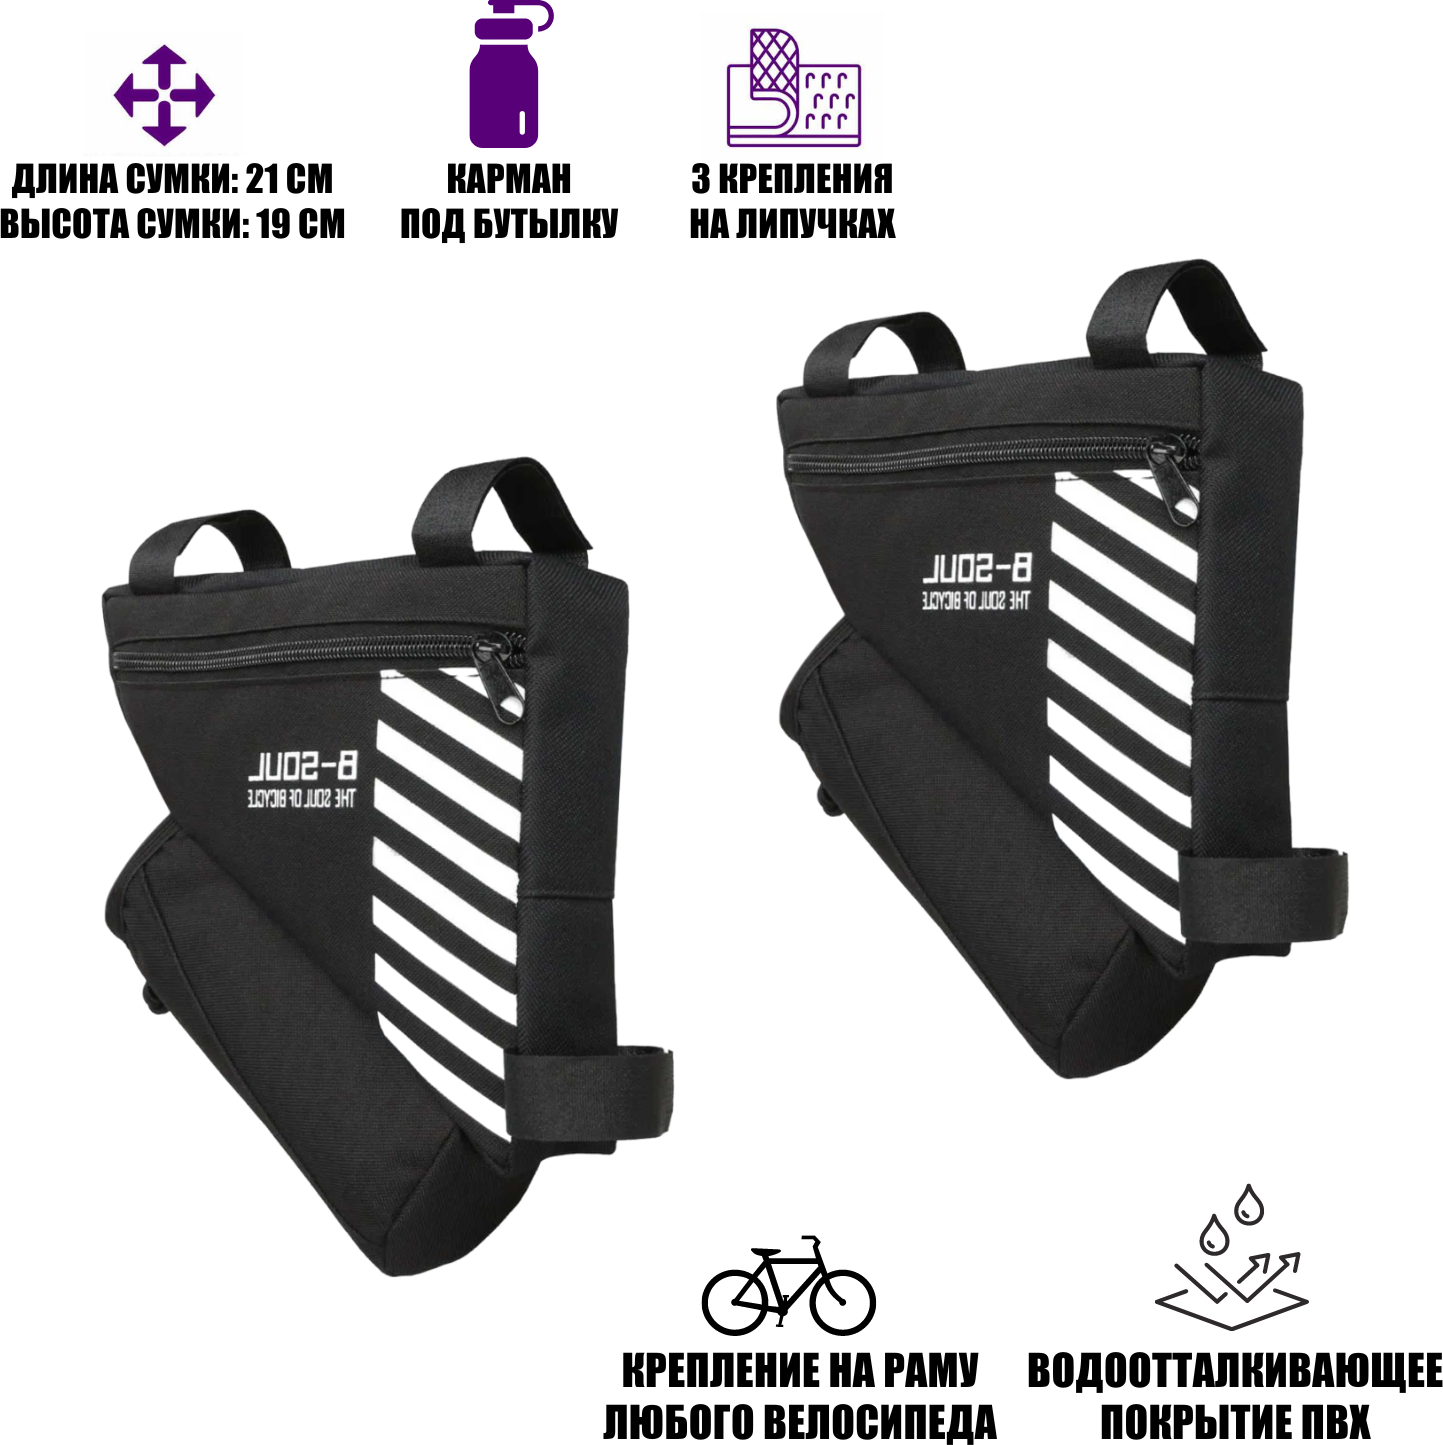 Велосумка на раму VB-01, сумка для велосипеда дорожная, черная, 2 шт